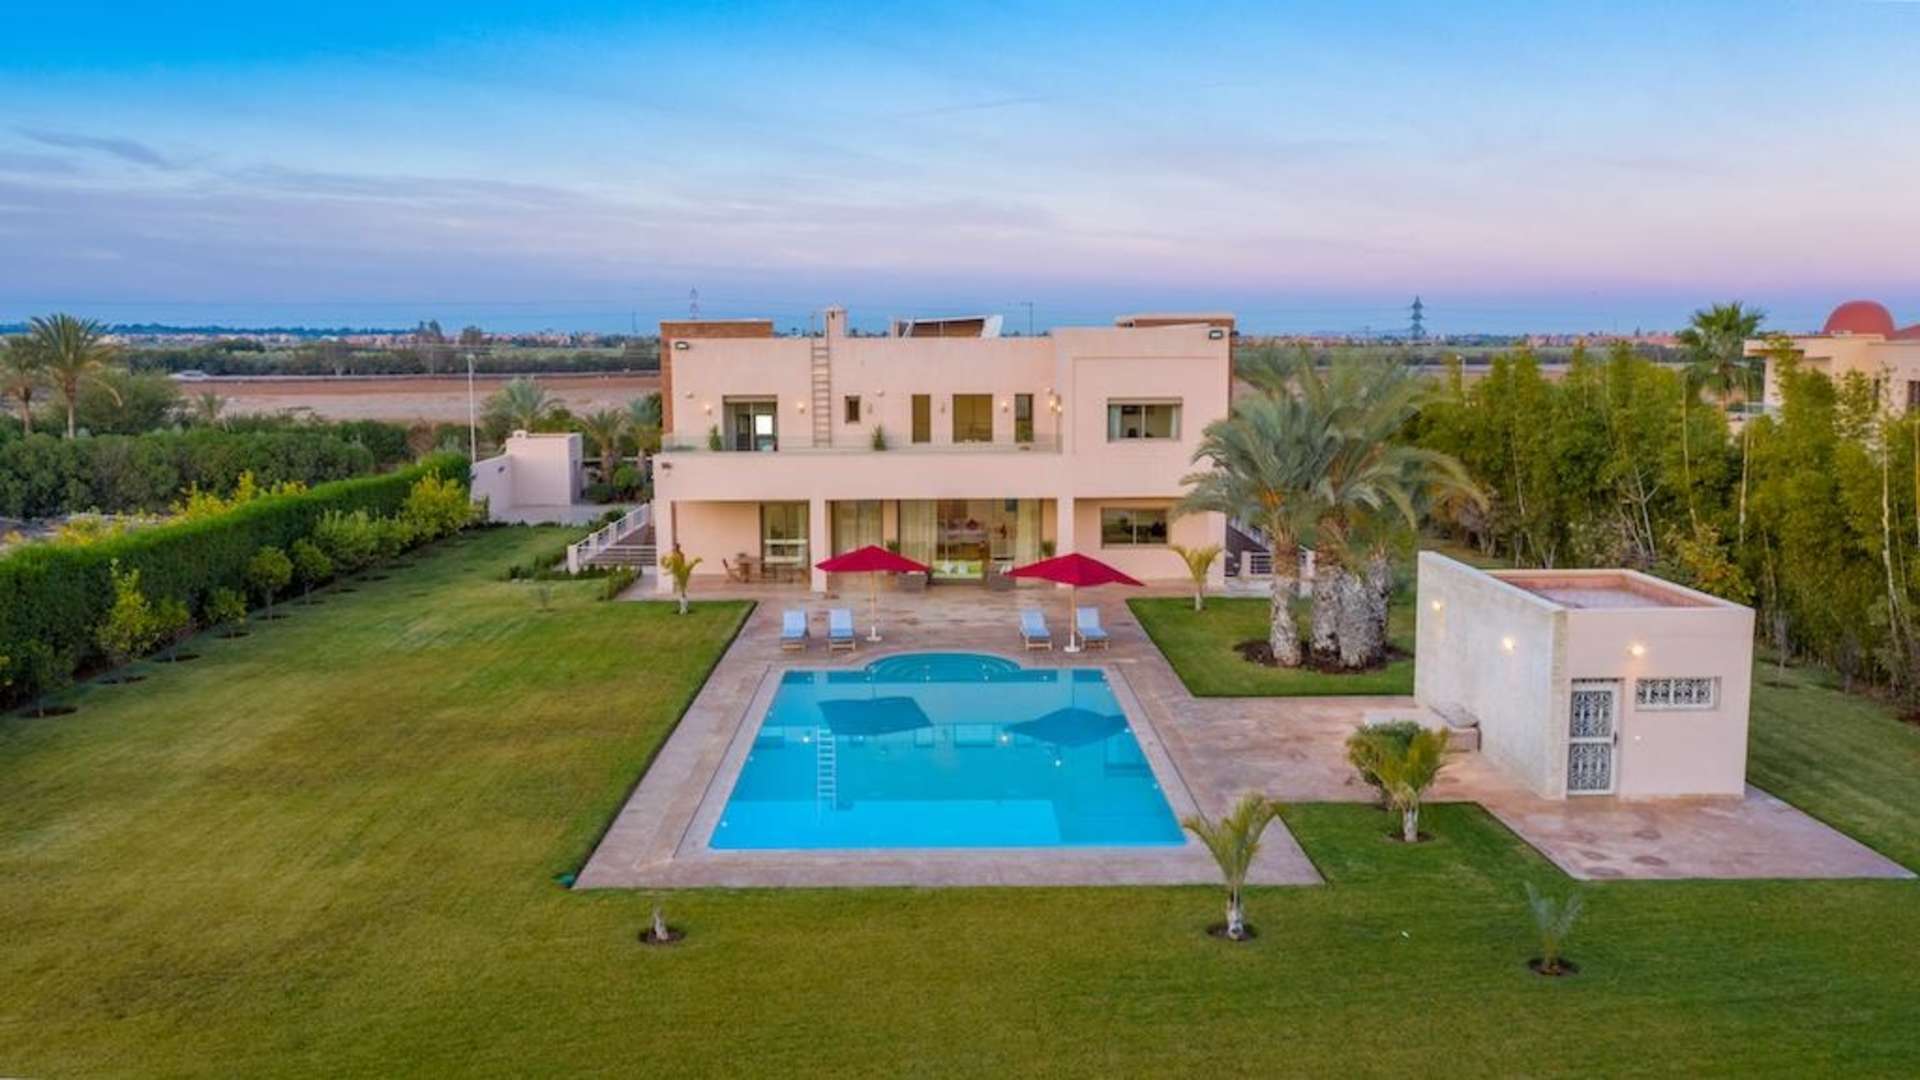 Location de vacances,Villa,Superbe villa 6 chambres avec piscine privée à Marrakech ,Marrakech,Route d'Ouarzazate